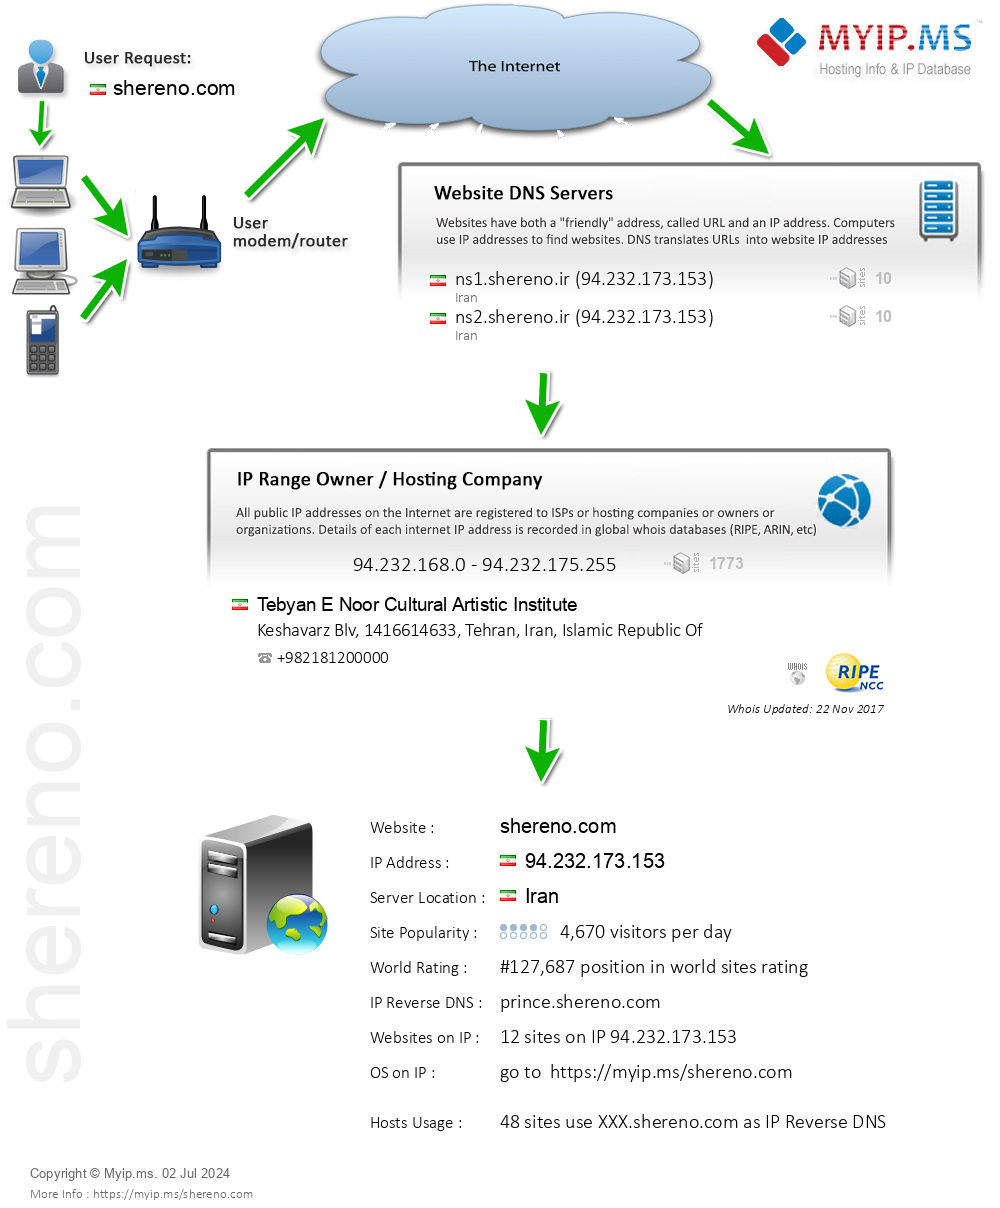 Shereno.com - Website Hosting Visual IP Diagram